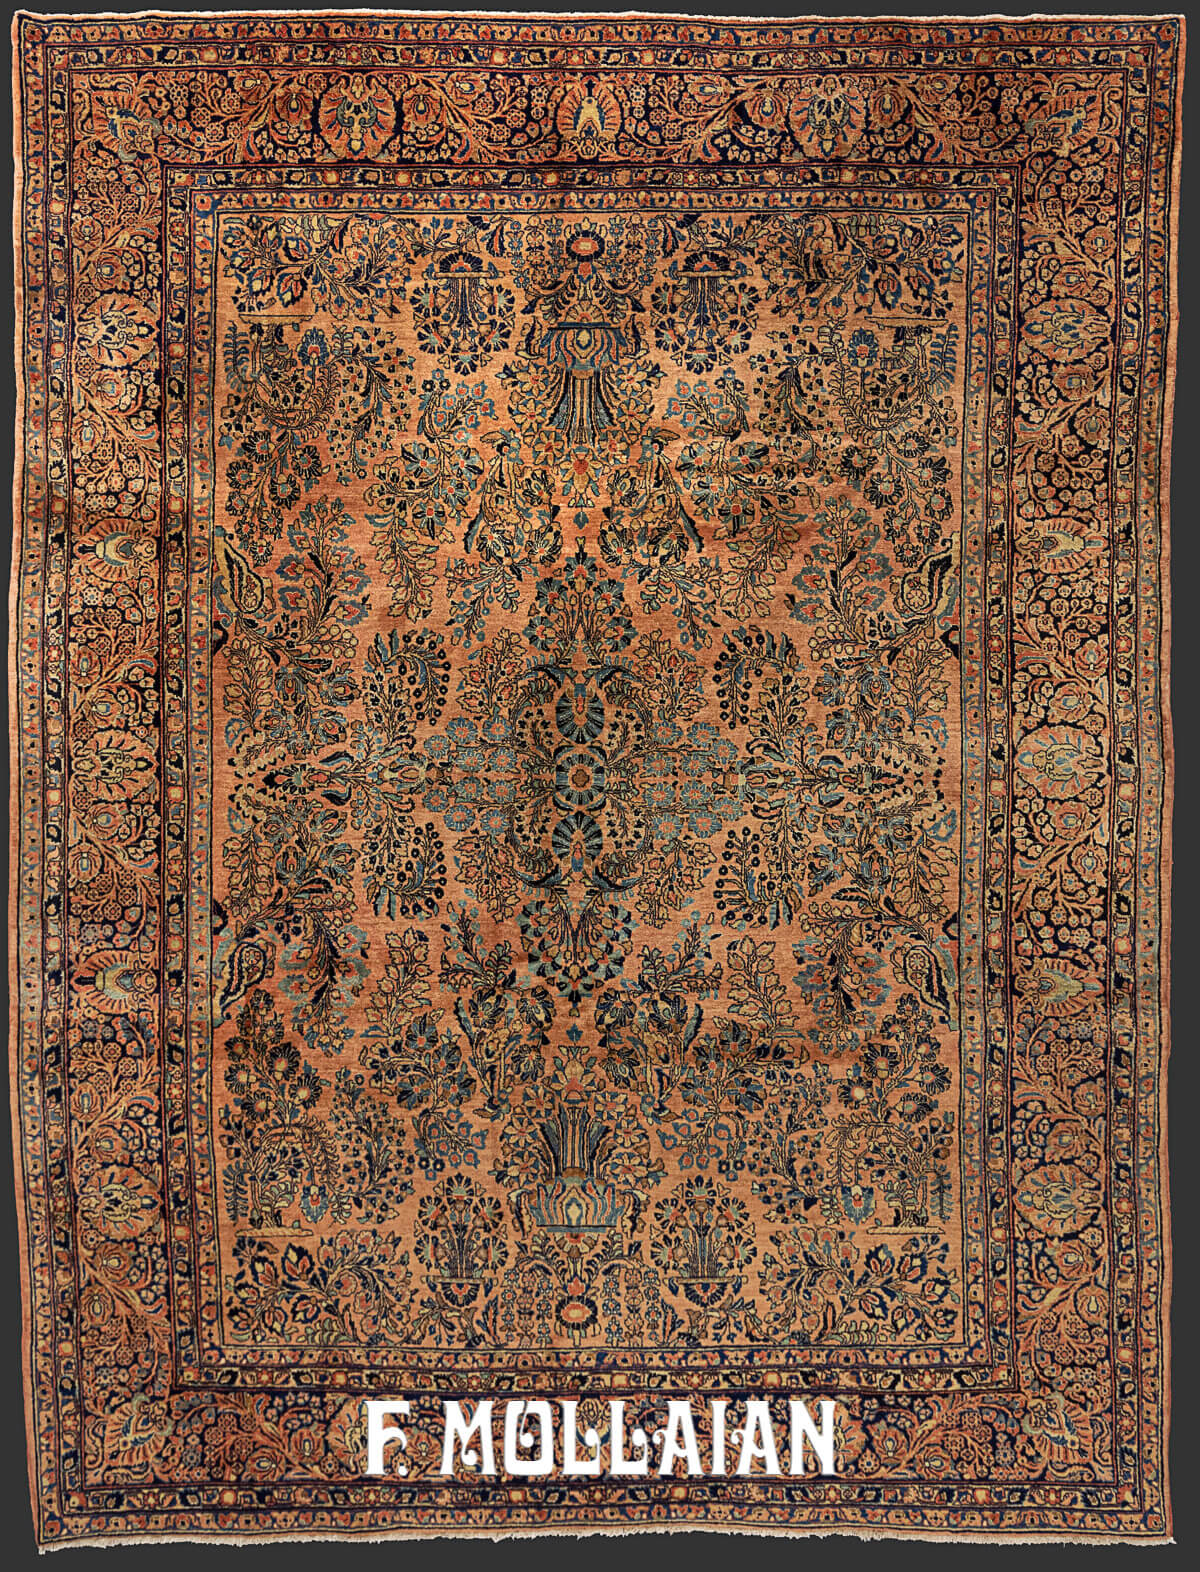 Antique Persian Saruk Classic Floral Carpet n°:66280303